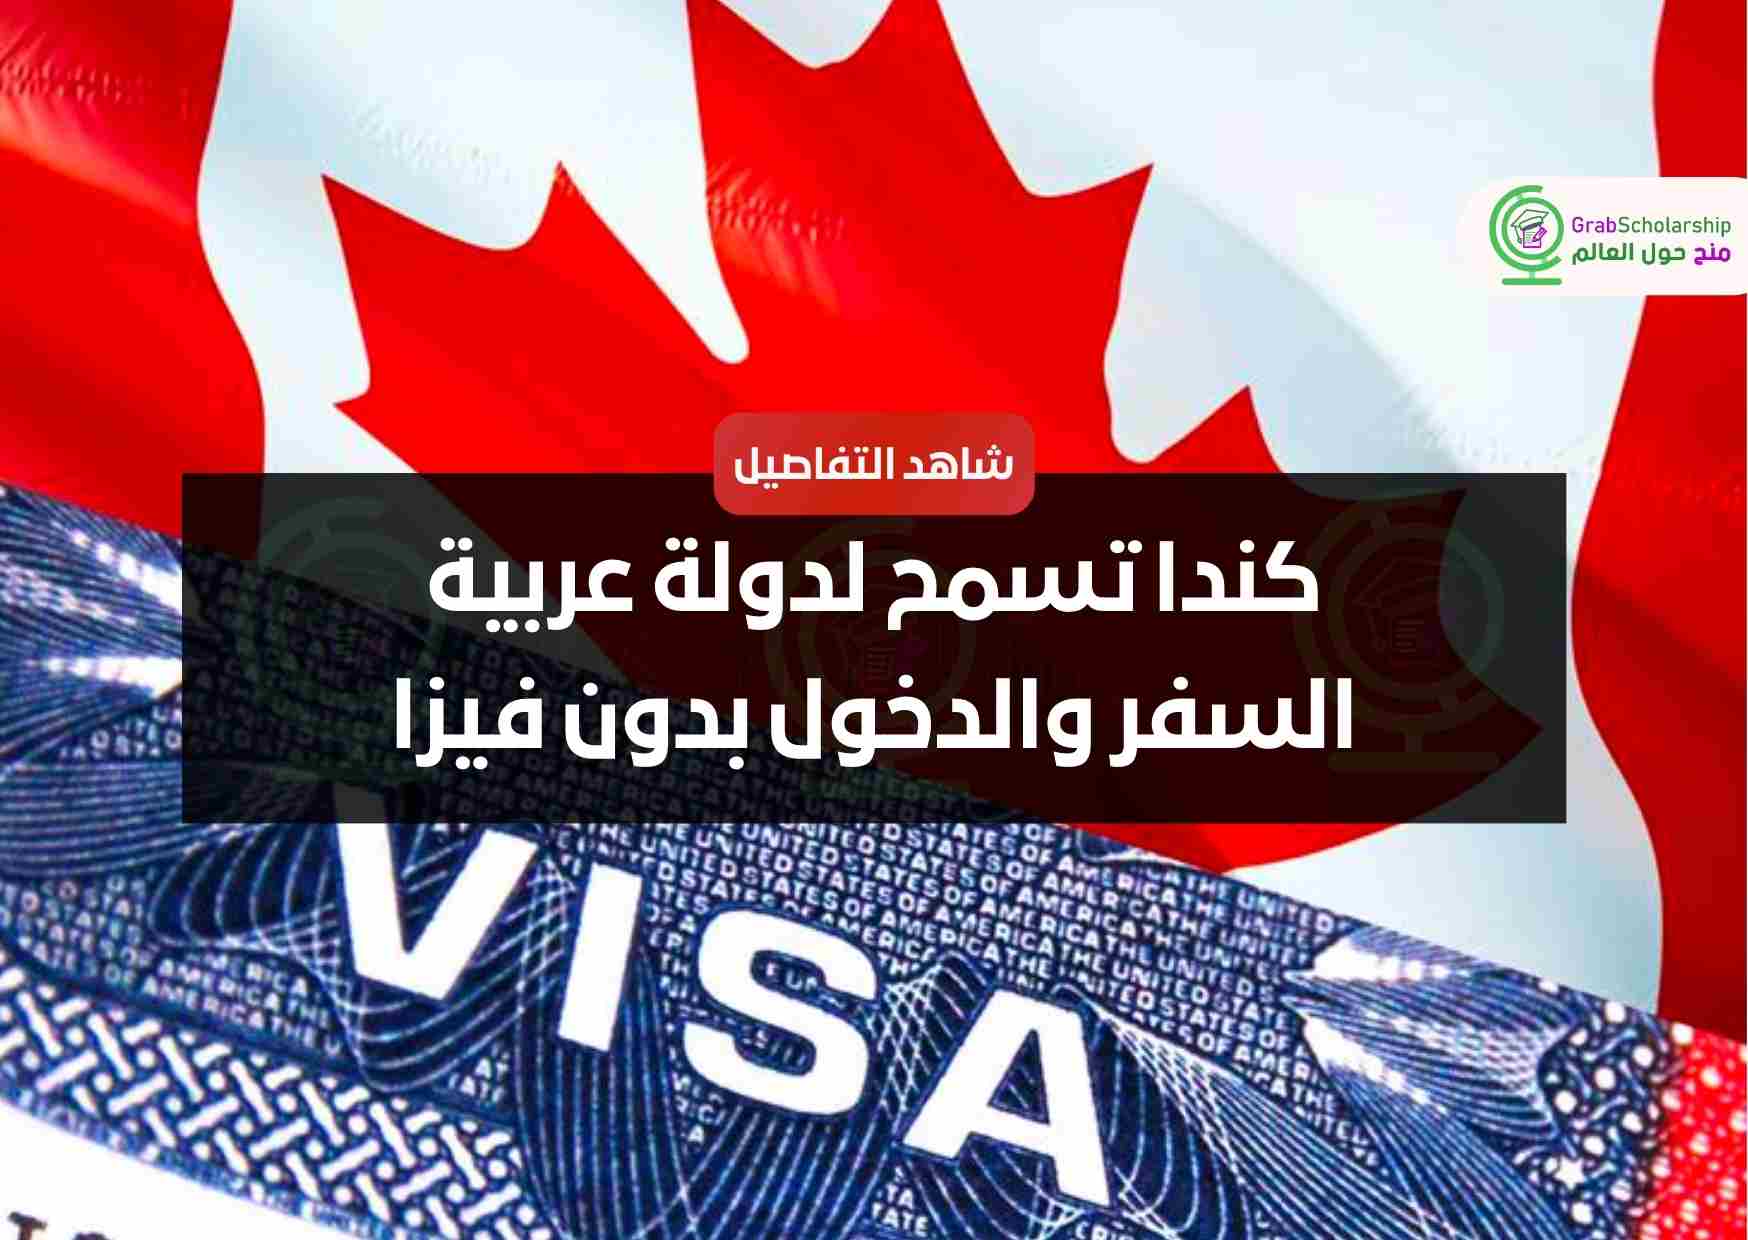 كندا تسمح لدولة عربية السفر والدخول بدون فيزا